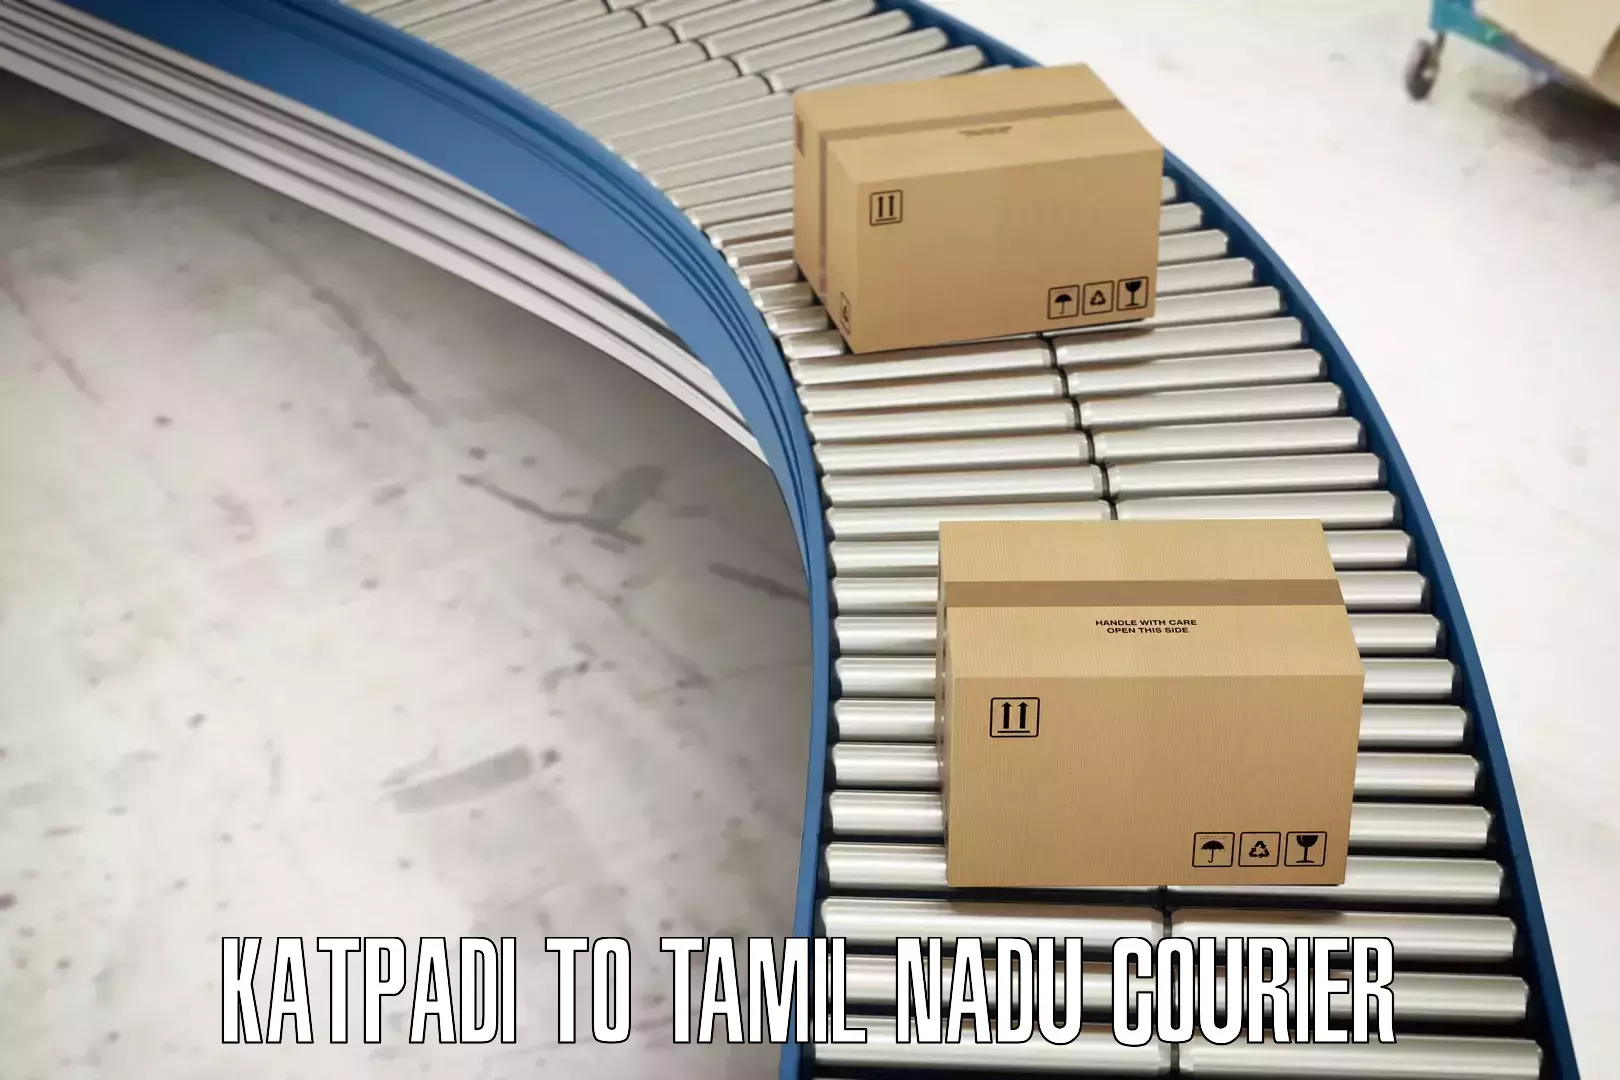 Smart logistics solutions in Katpadi to Tamil Nadu